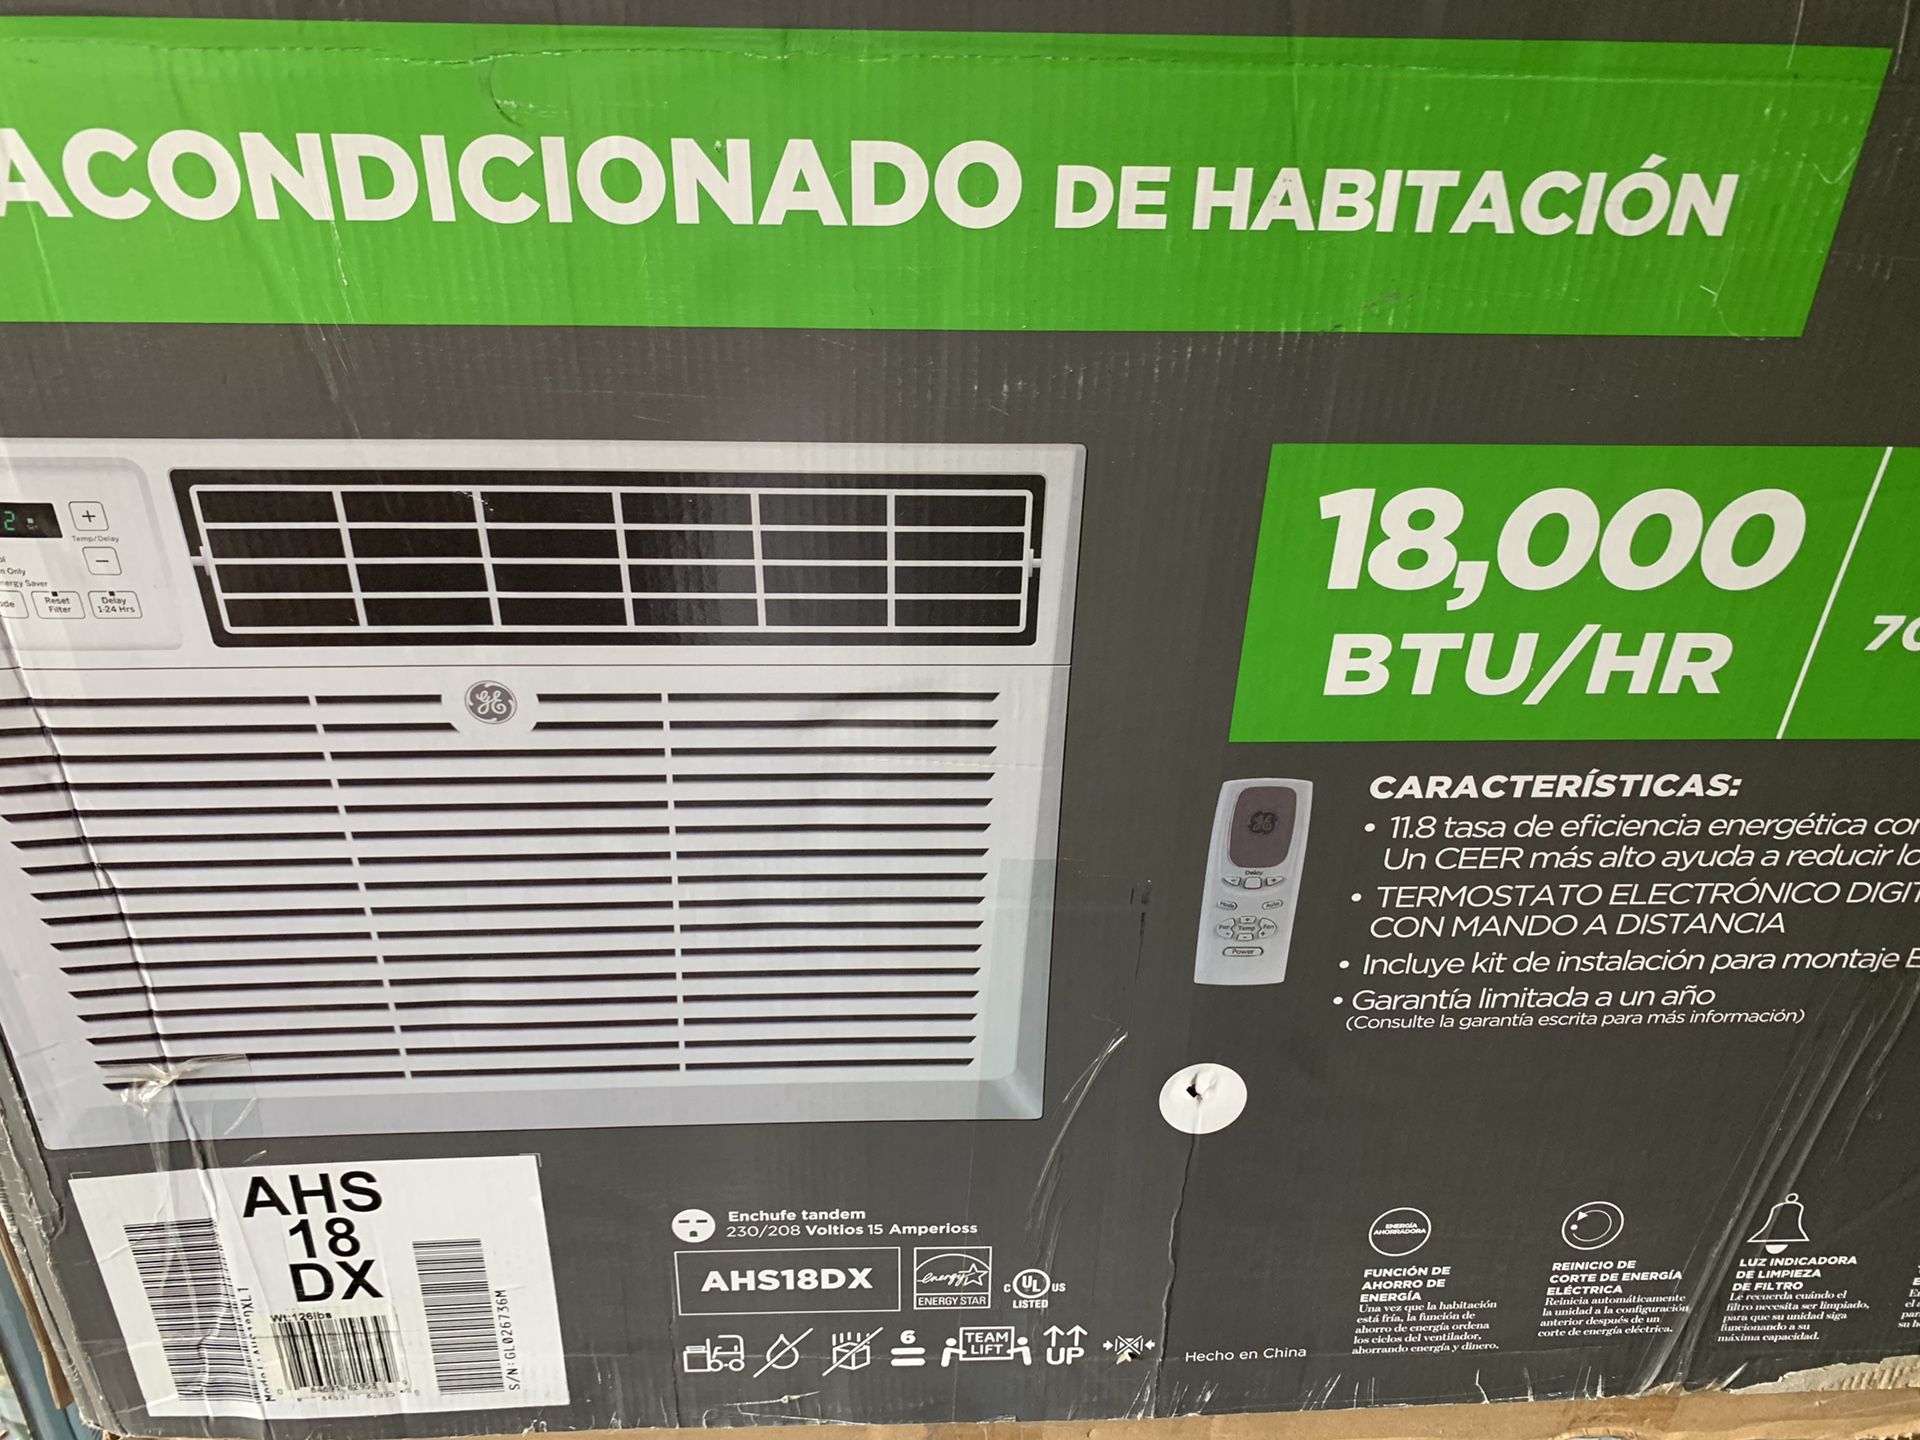 New Air conditioner 18,000 btu